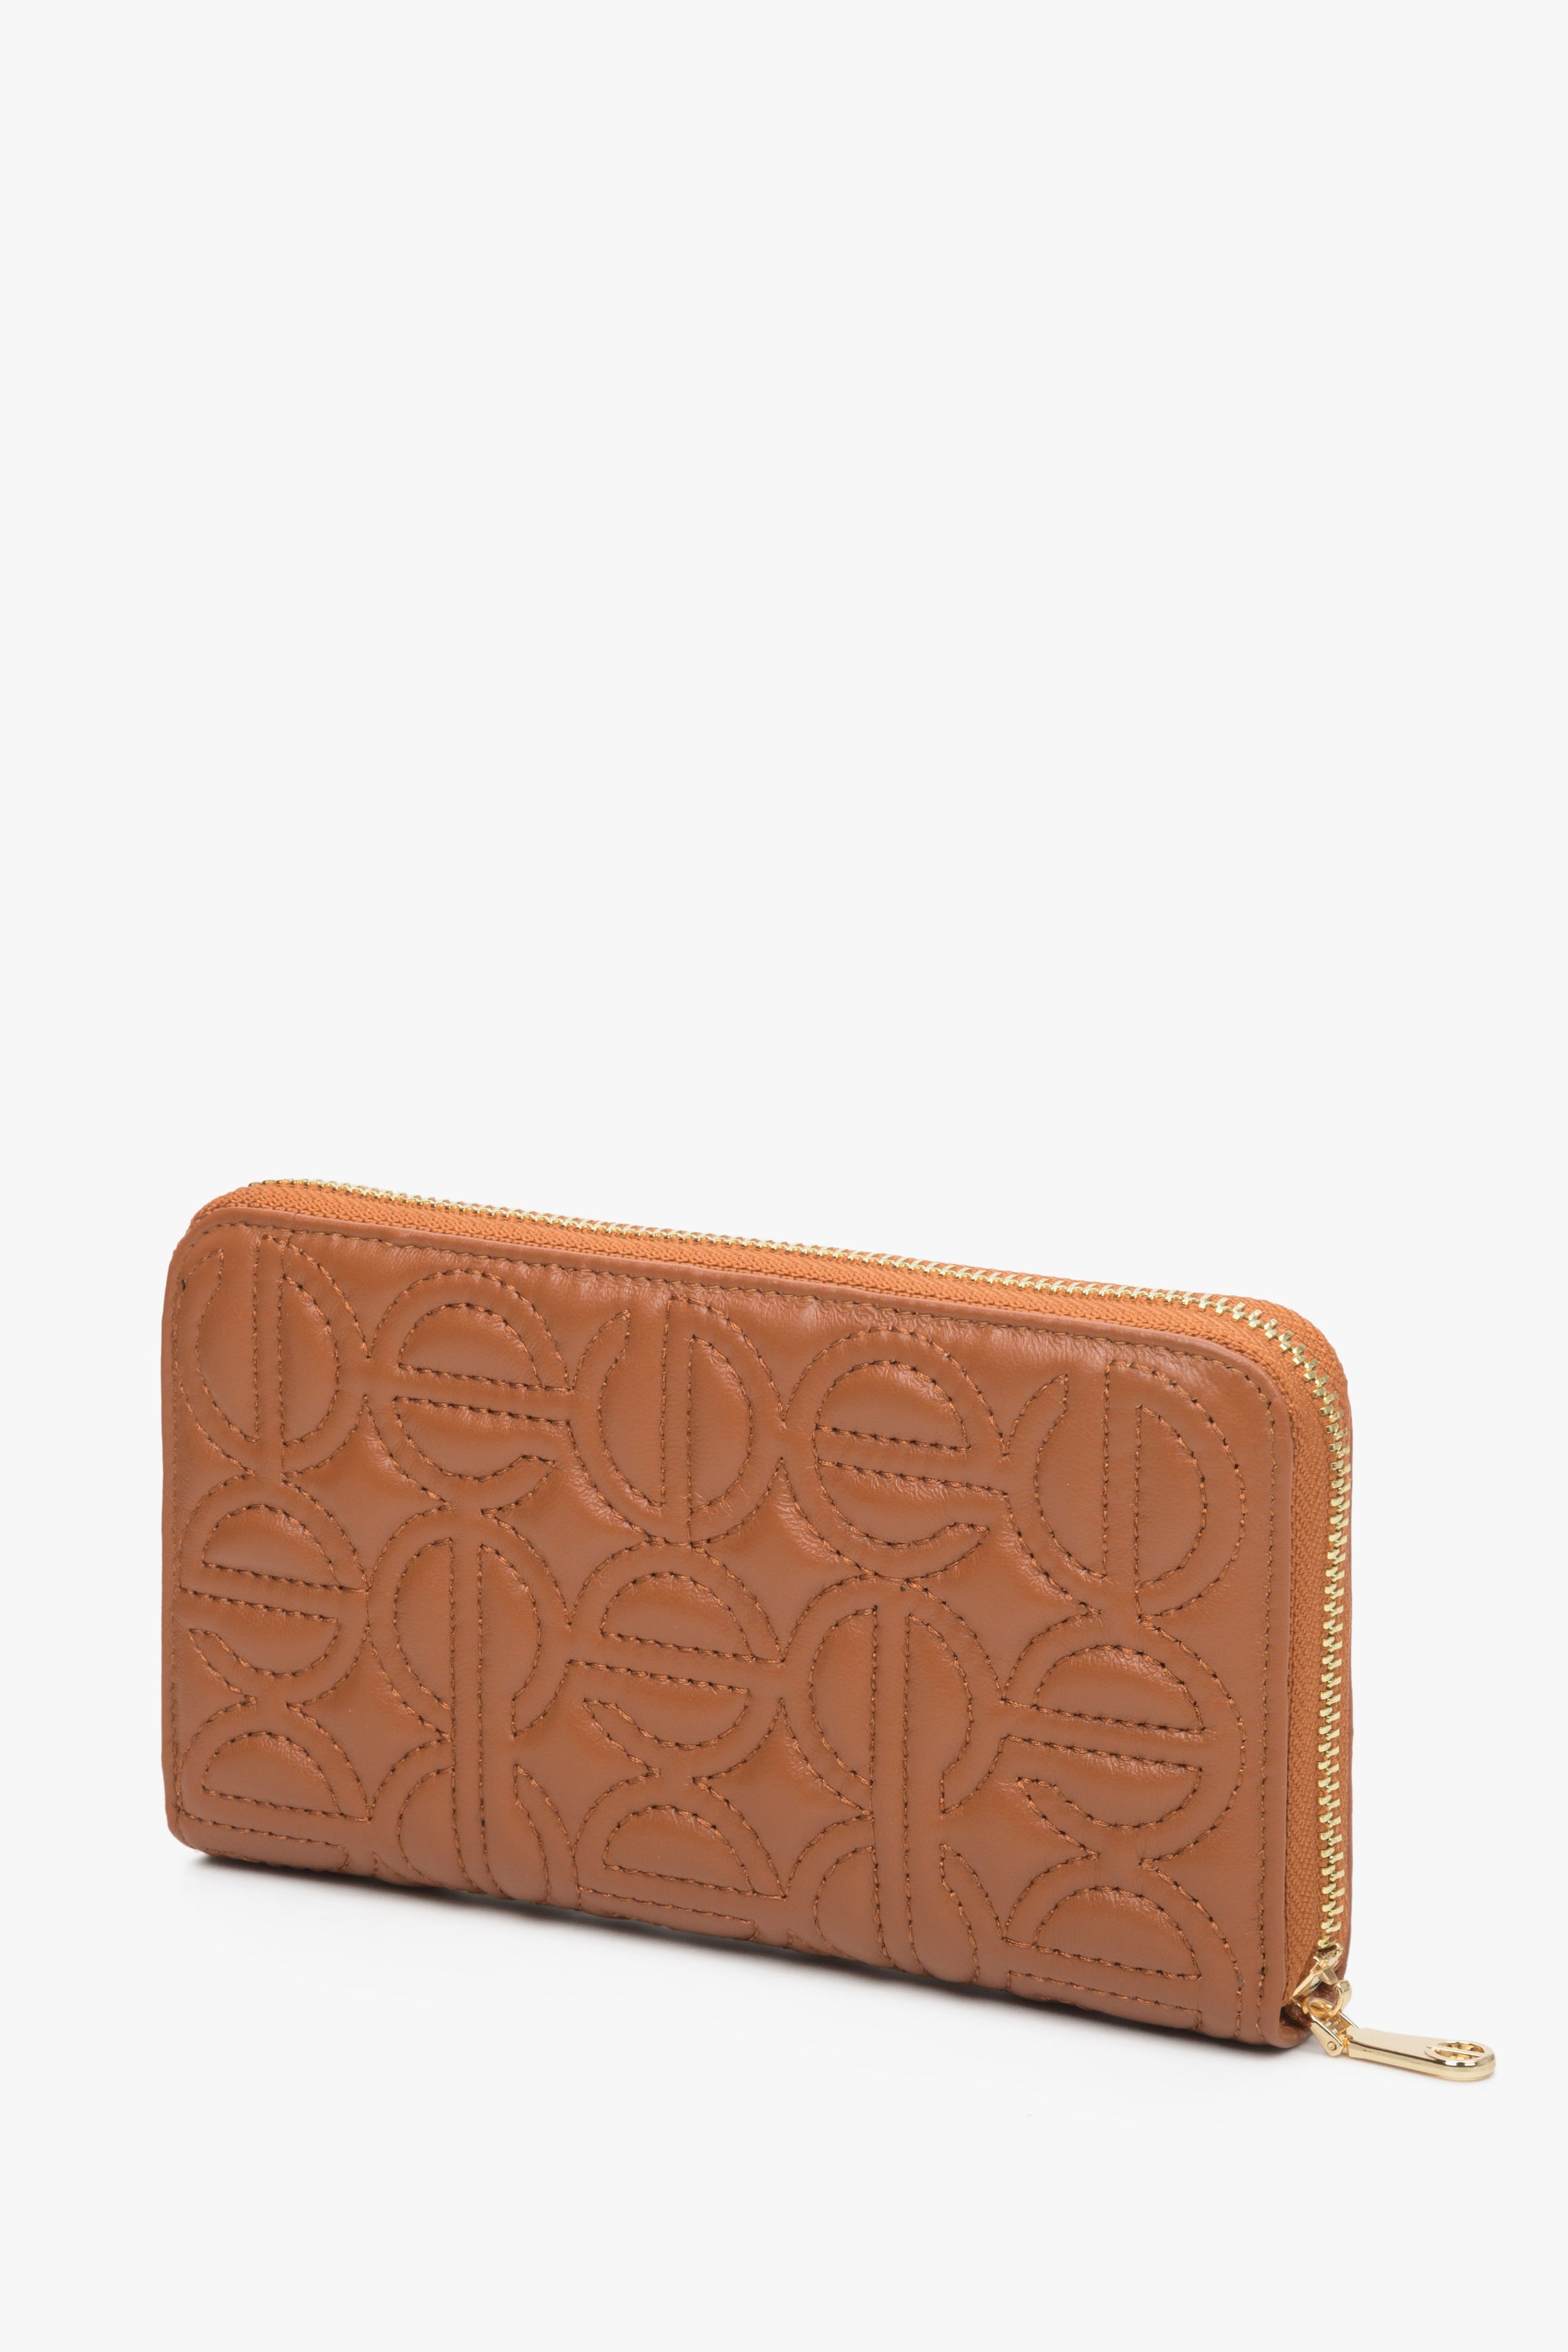 Estro: Duży brązowy portfel damski zasuwany ze skóry naturalnej